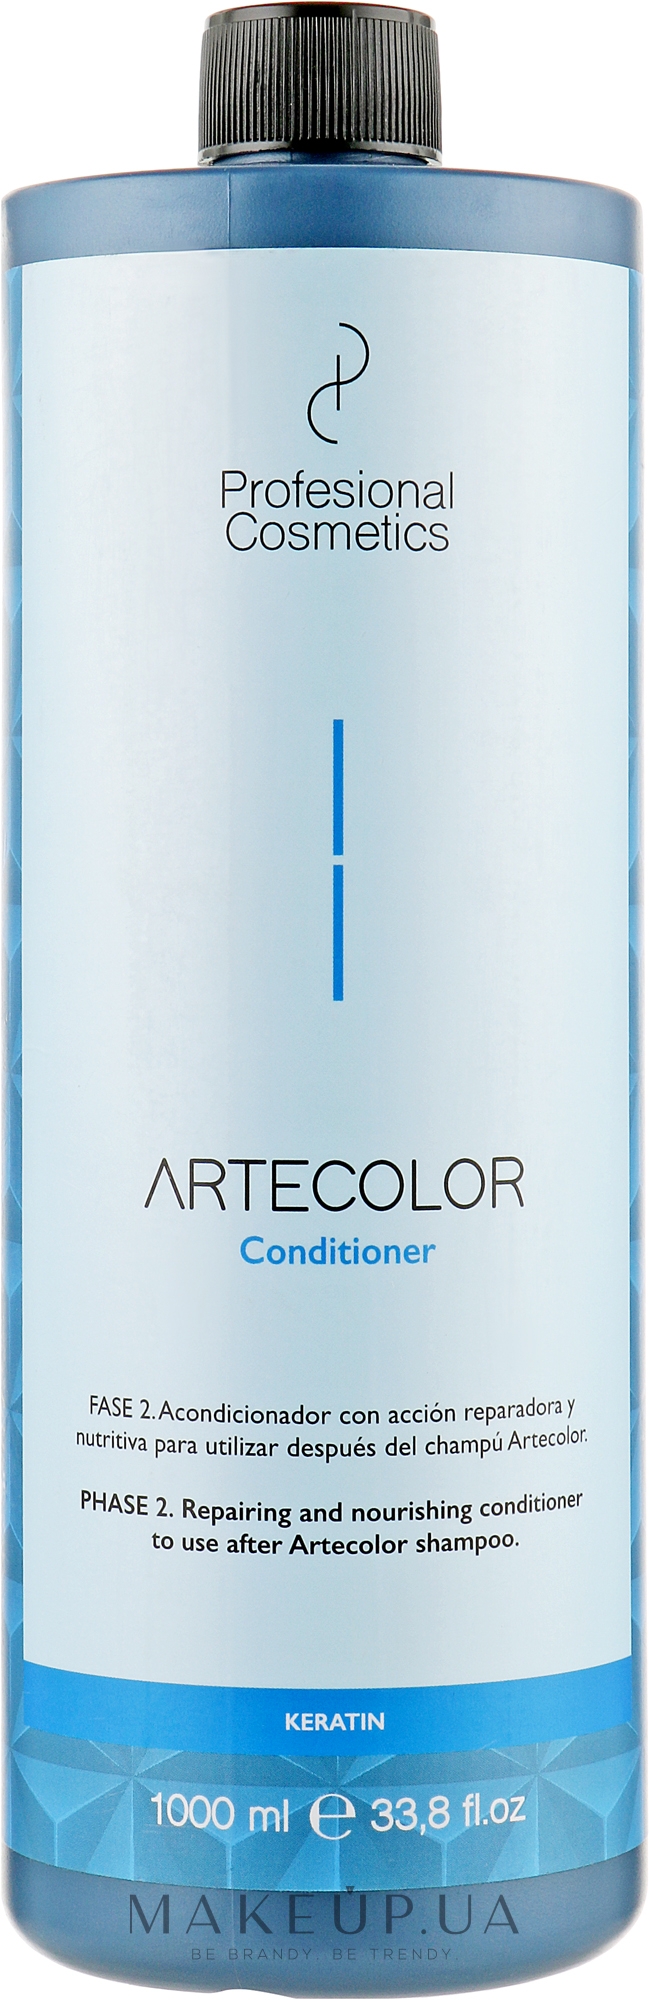 Бальзам-кондиционер после окрашивания - Profesional Cosmetics Artecolor Conditioner — фото 1000ml